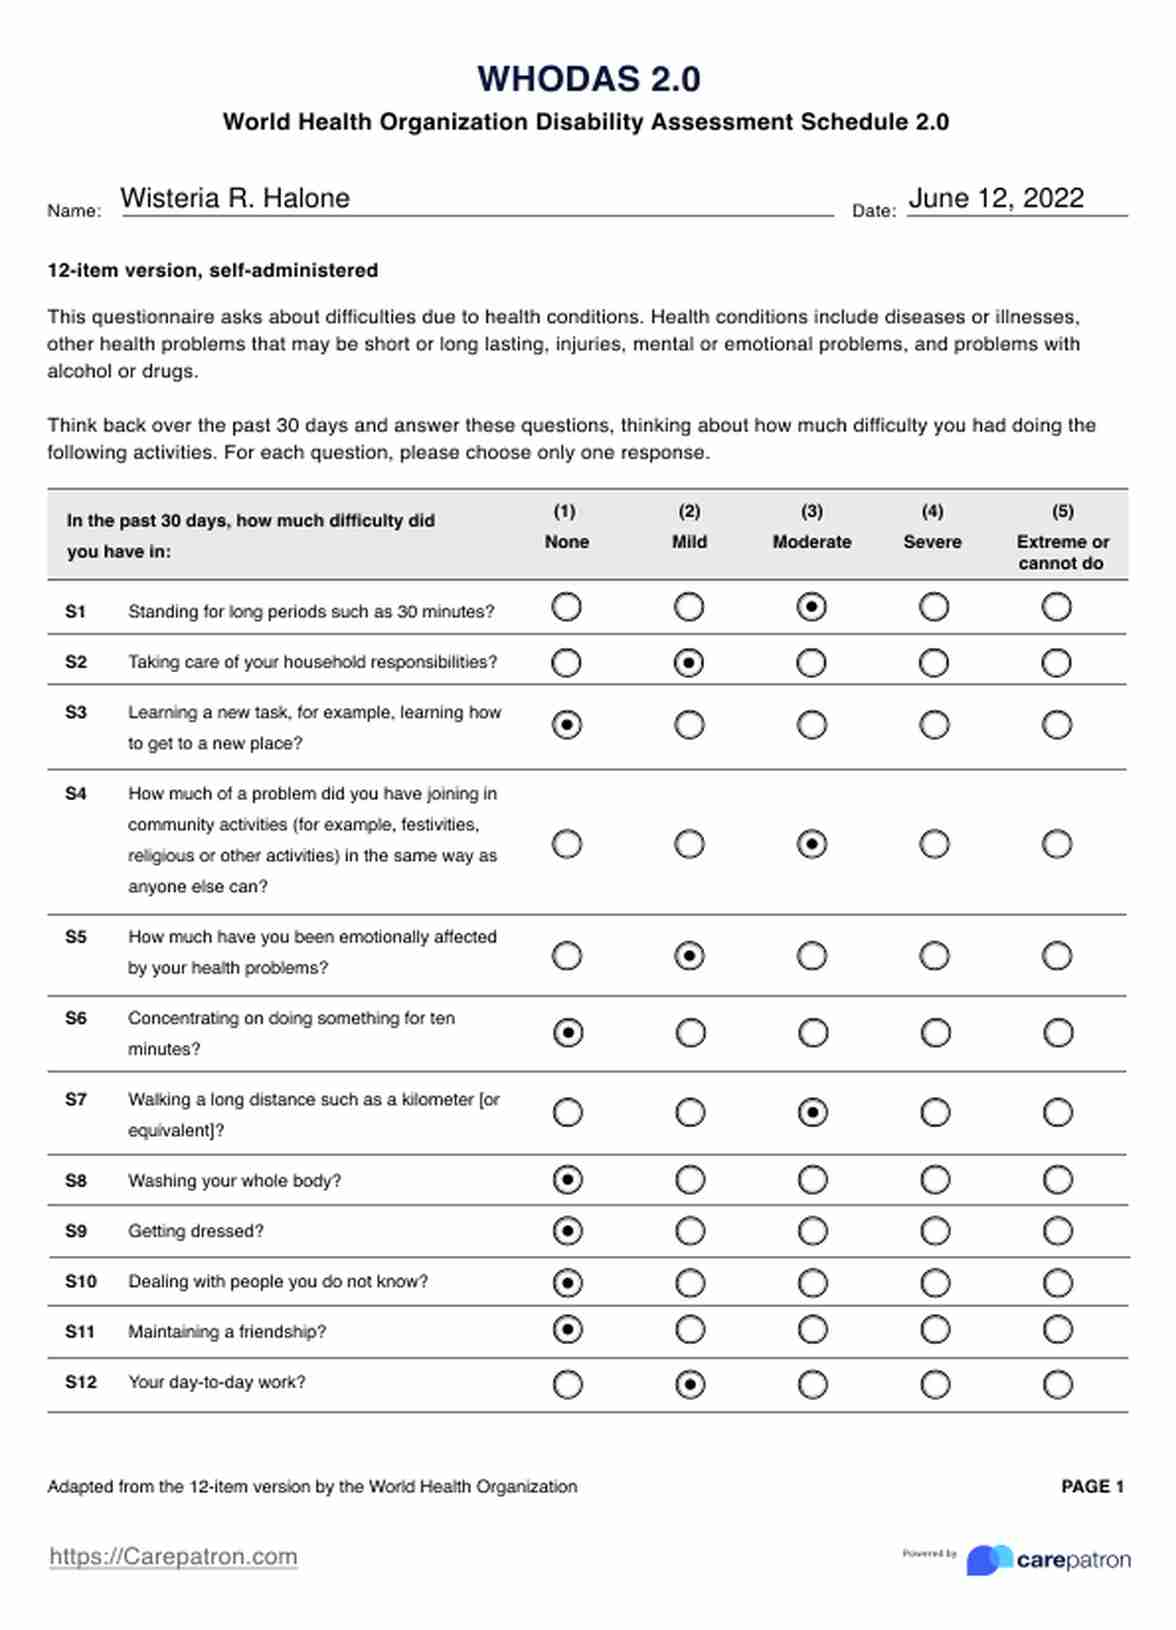 WHODAS 2.0 Cuestionario para la evaluación de la discapacidad de la OMS PDF Example